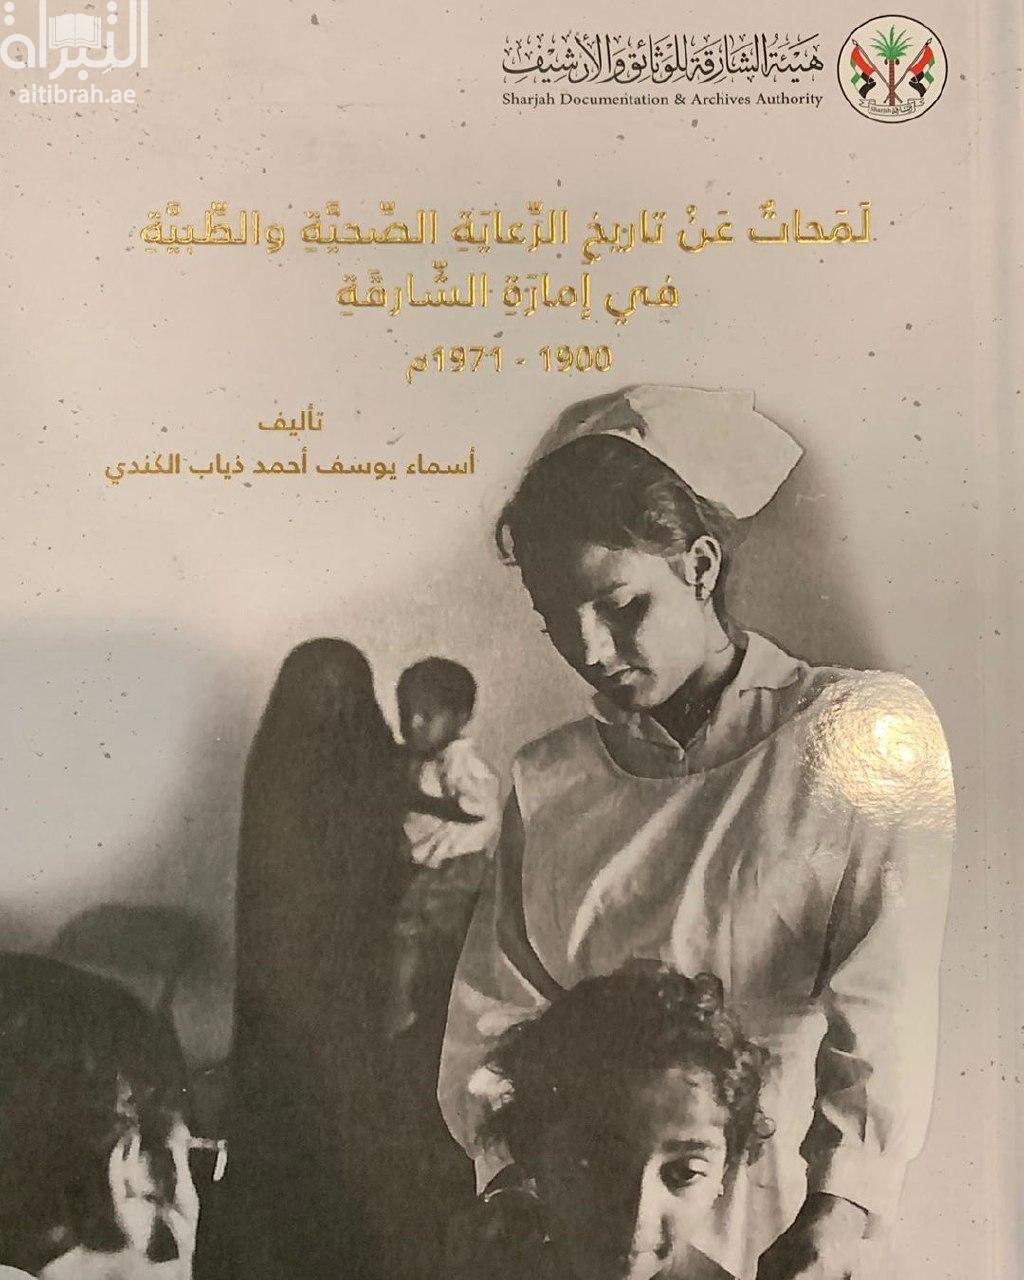 لمحات عن تاريخ الرعاية الصحية والطبية في إمارة الشارقة 1900 - 1971 م